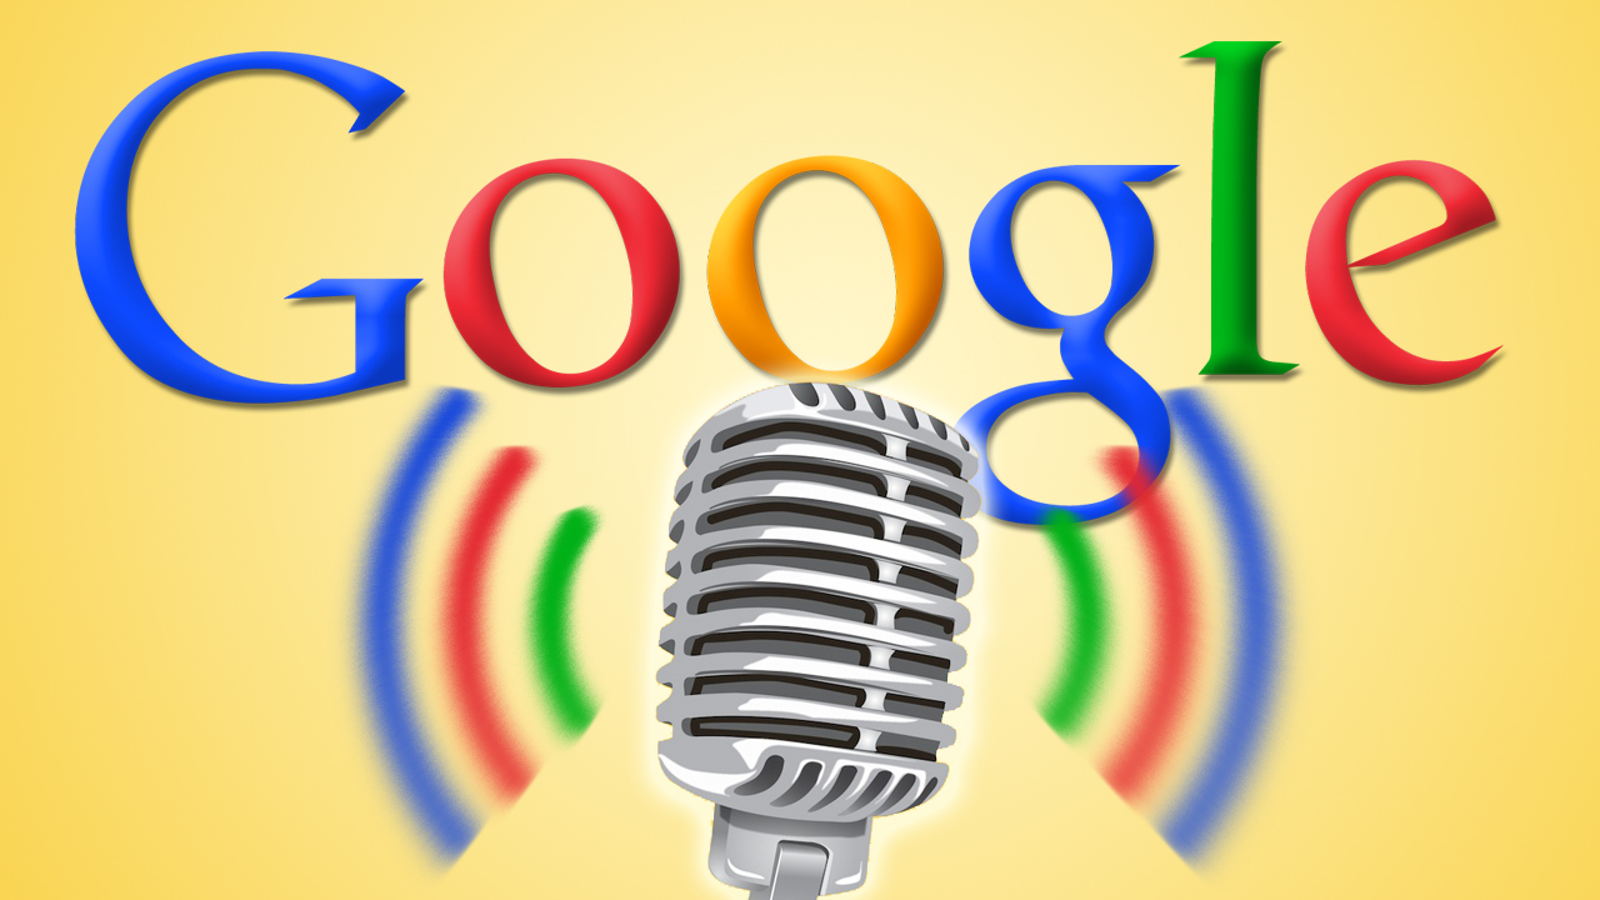 google voice desktop client app